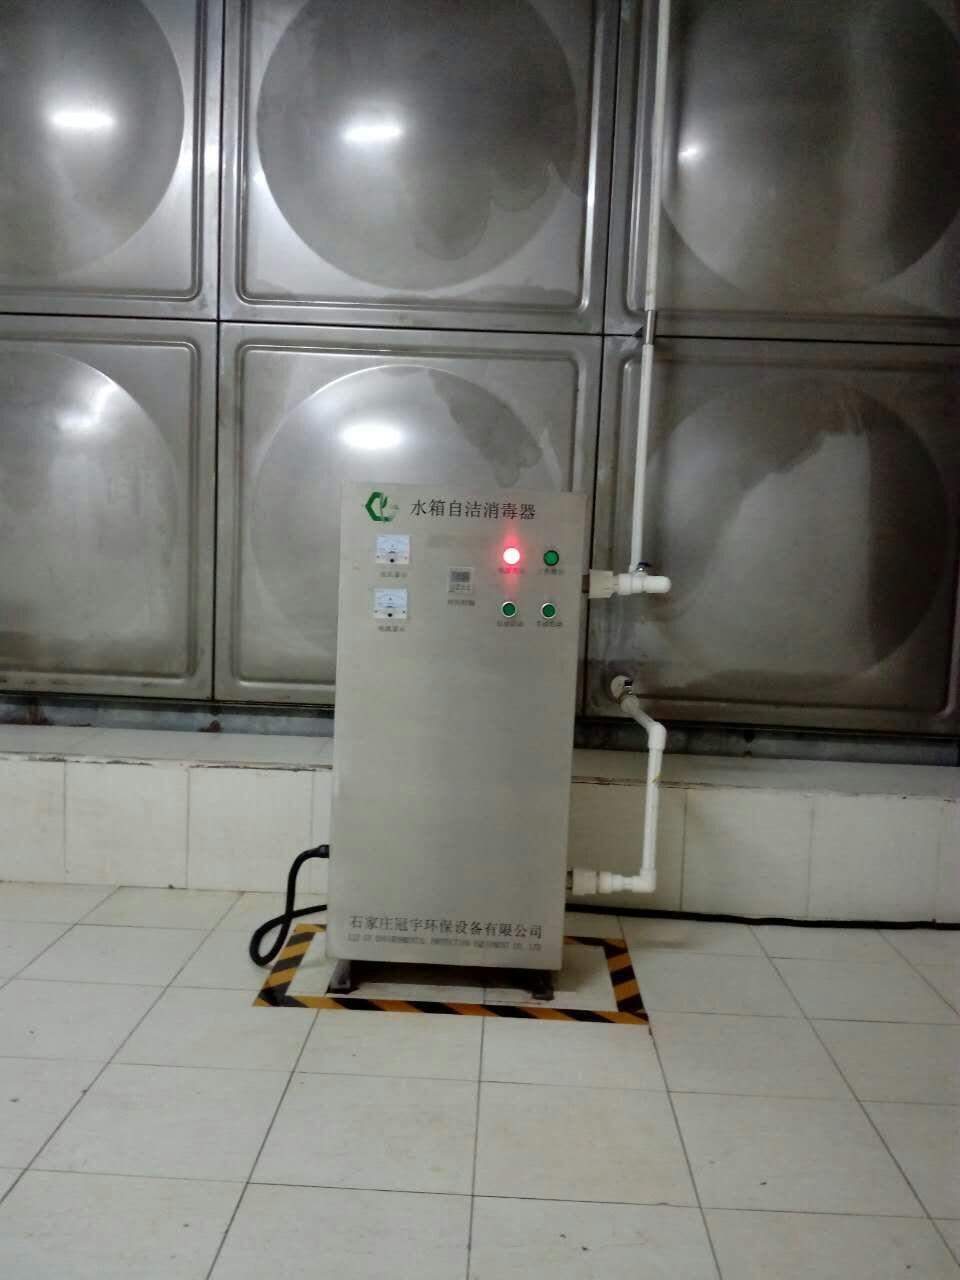 DSC-I水箱自洁消毒器